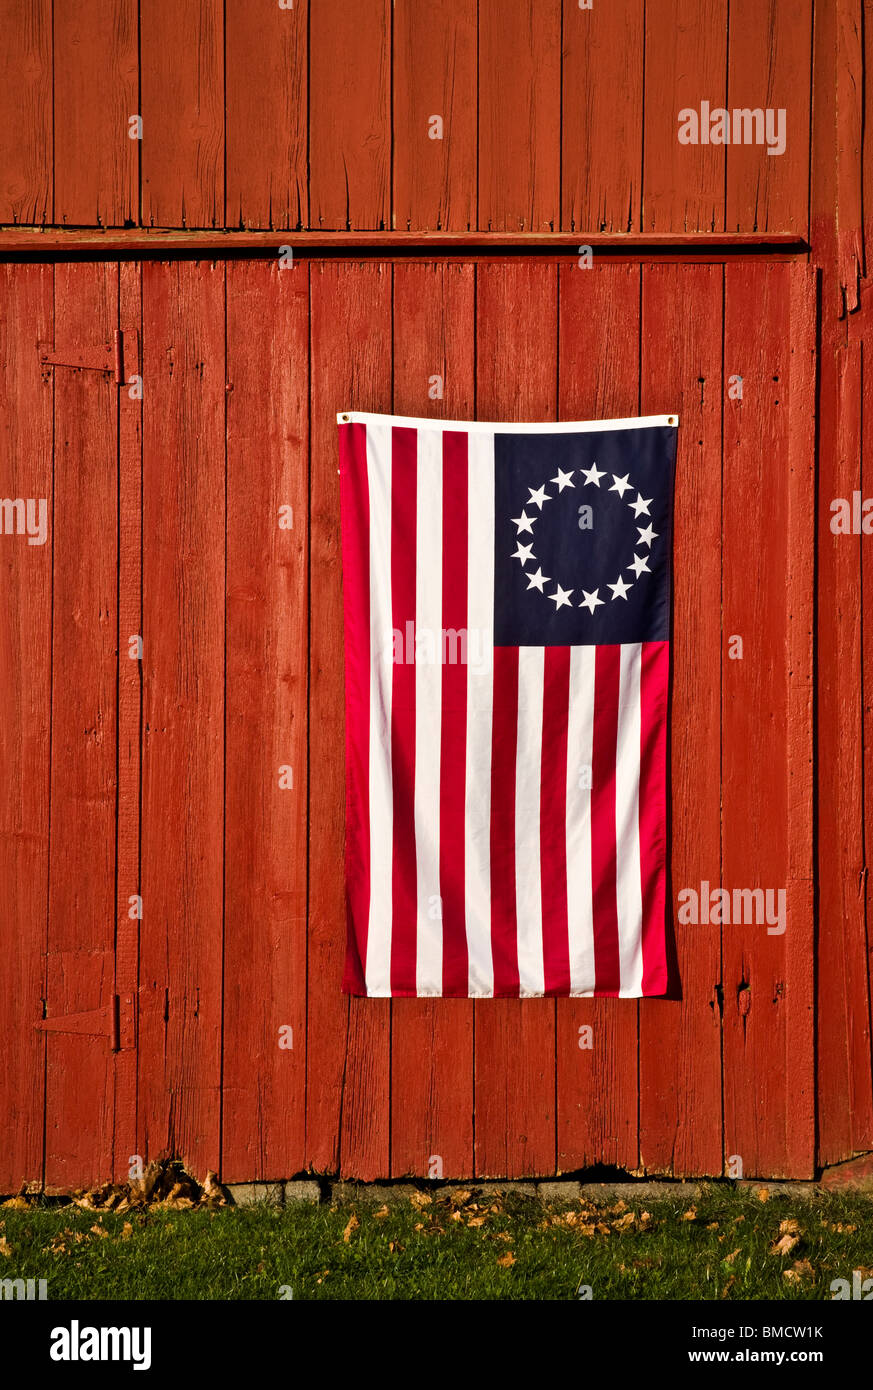 Nachbildung einer alten amerikanischen Flagge, 13 Sterne und srripes, Betsy Ross auf einer alten roten Scheune, New Jersey, US-Flagge, US-Flagge aus der Nähe Stockfoto